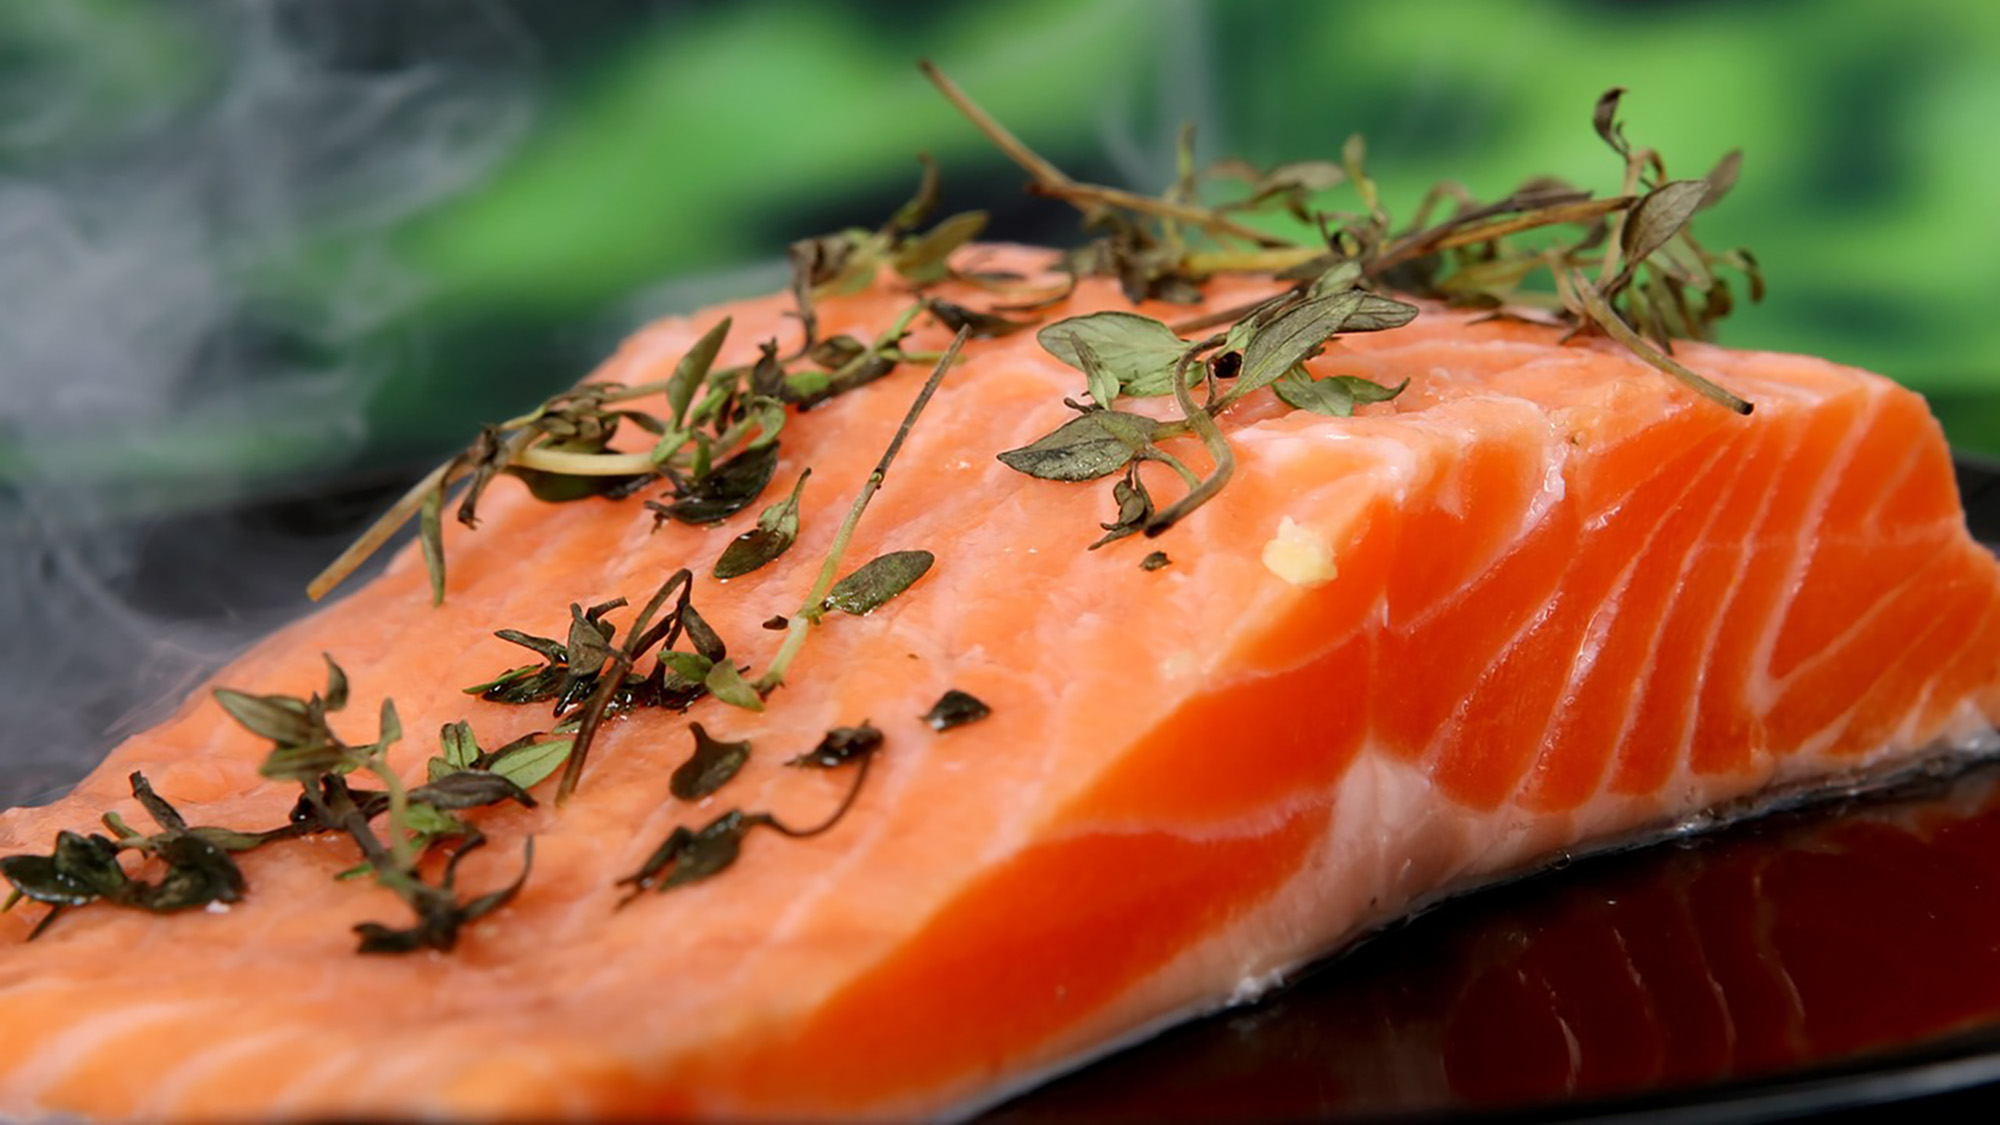 El peix és una font important de nutrients. Conté àcids grassos poliinsaturats de cadena llarga omega-3, necessaris pel desenvolupament del fetus. | Imatge de Shutterbug75 a Pixabay.